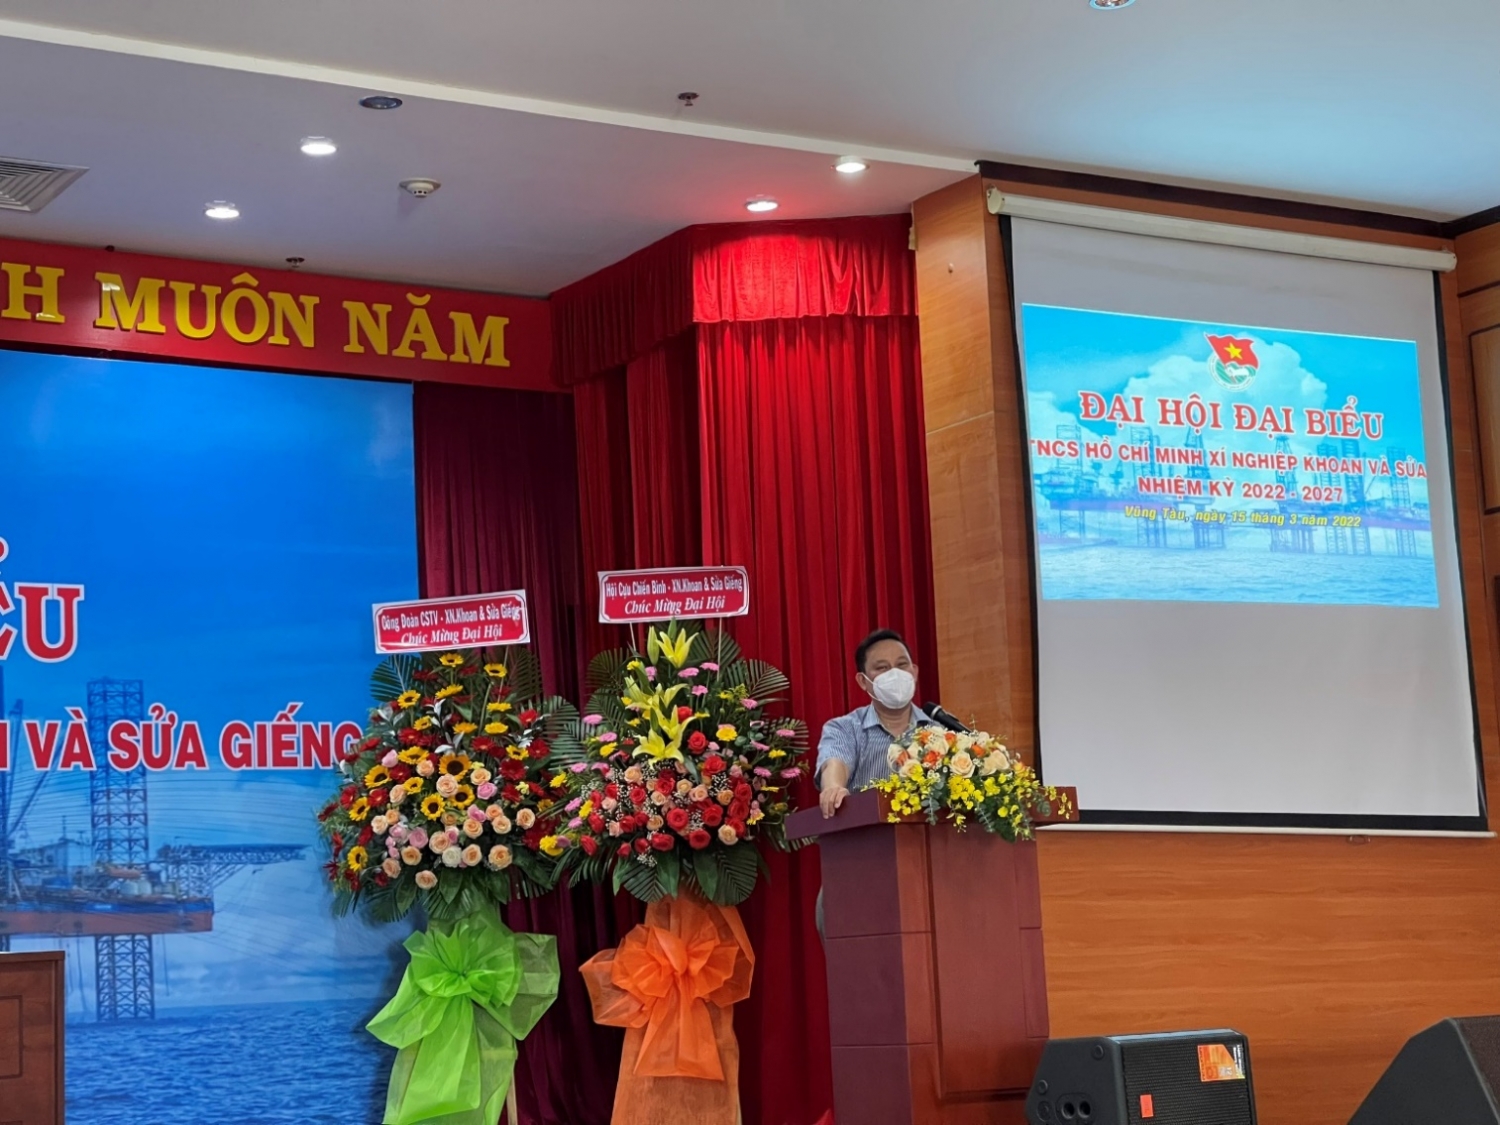 Xí nghiệp Khoan và Sửa giếng tổ chức thành công Đại hội đại biểu Đoàn TNCS Hồ Chí Minh, nhiệm kỳ 2022-2027